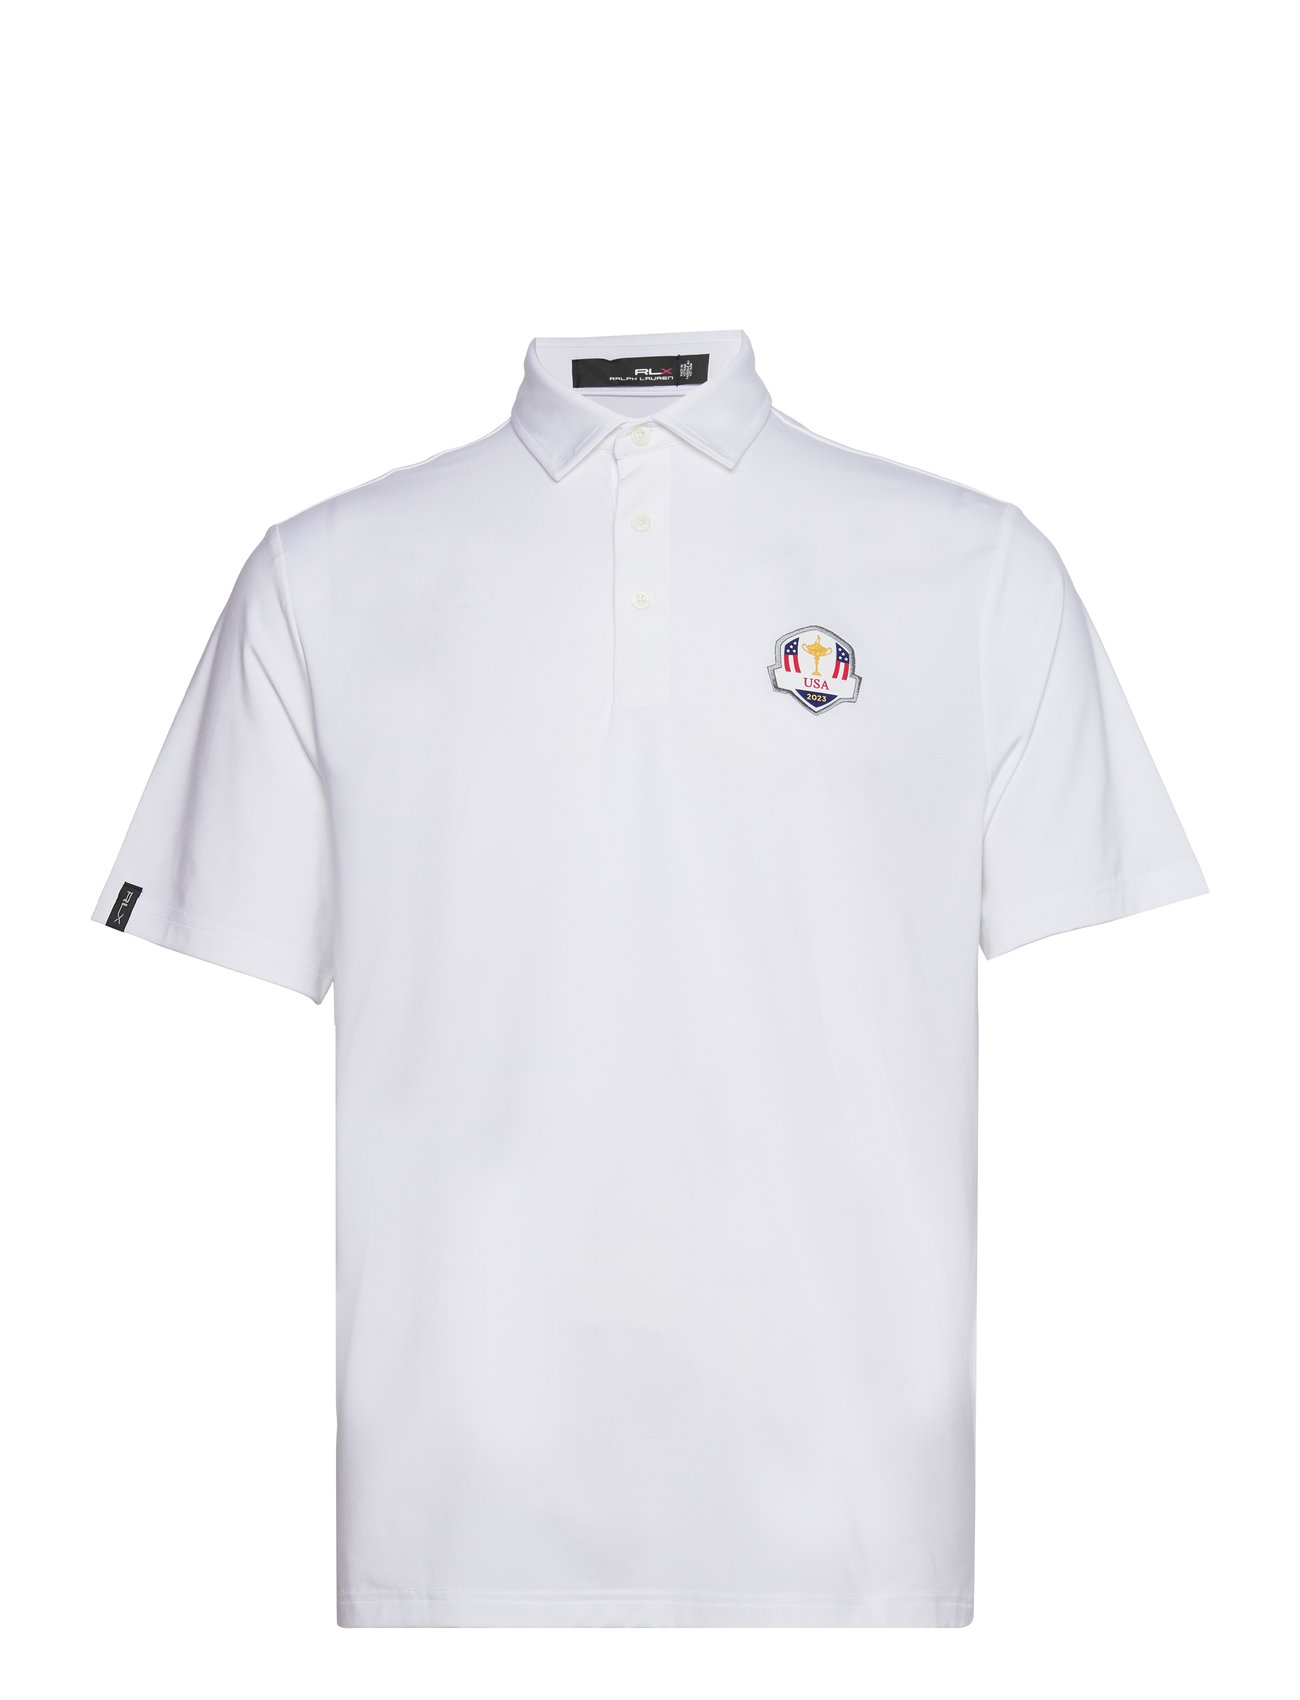 U.s. Ryder Cup Uniform Polo Shirt Sport Knitwear Short Sleeve Knitted Polos White Ralph Lauren Golf